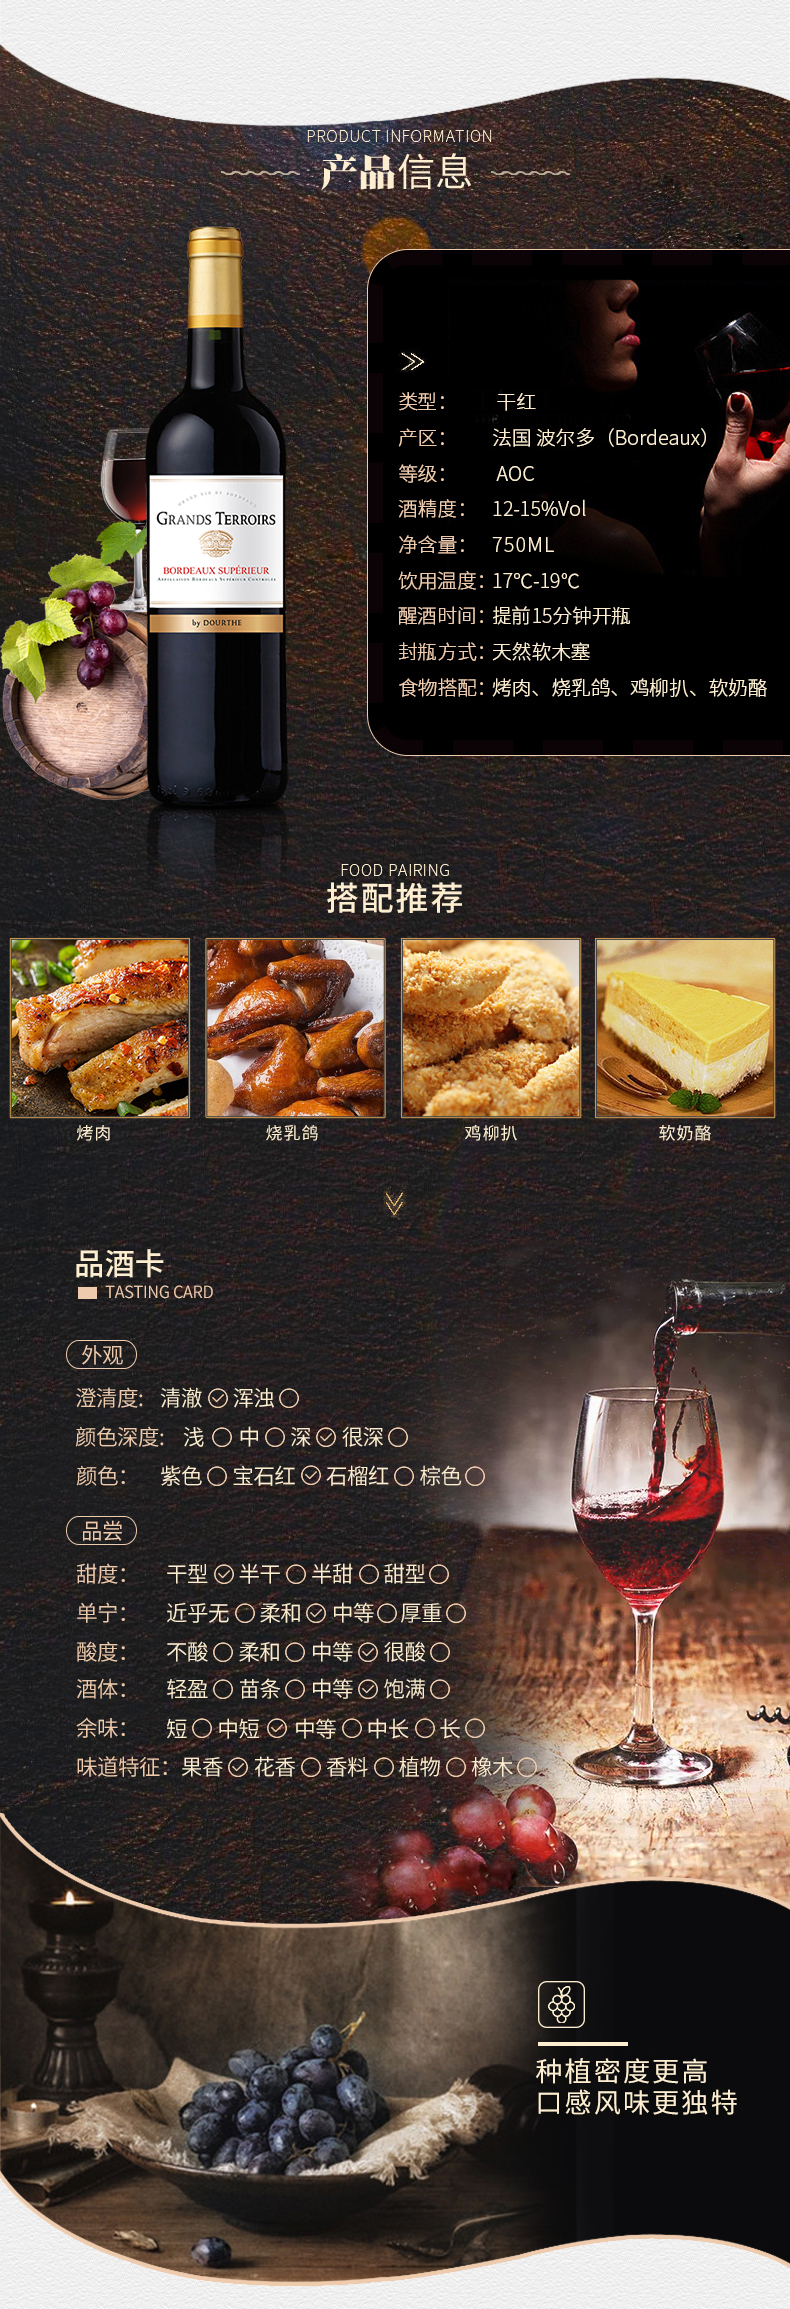 杜夫超级波尔多红葡萄酒-新标_03.jpg